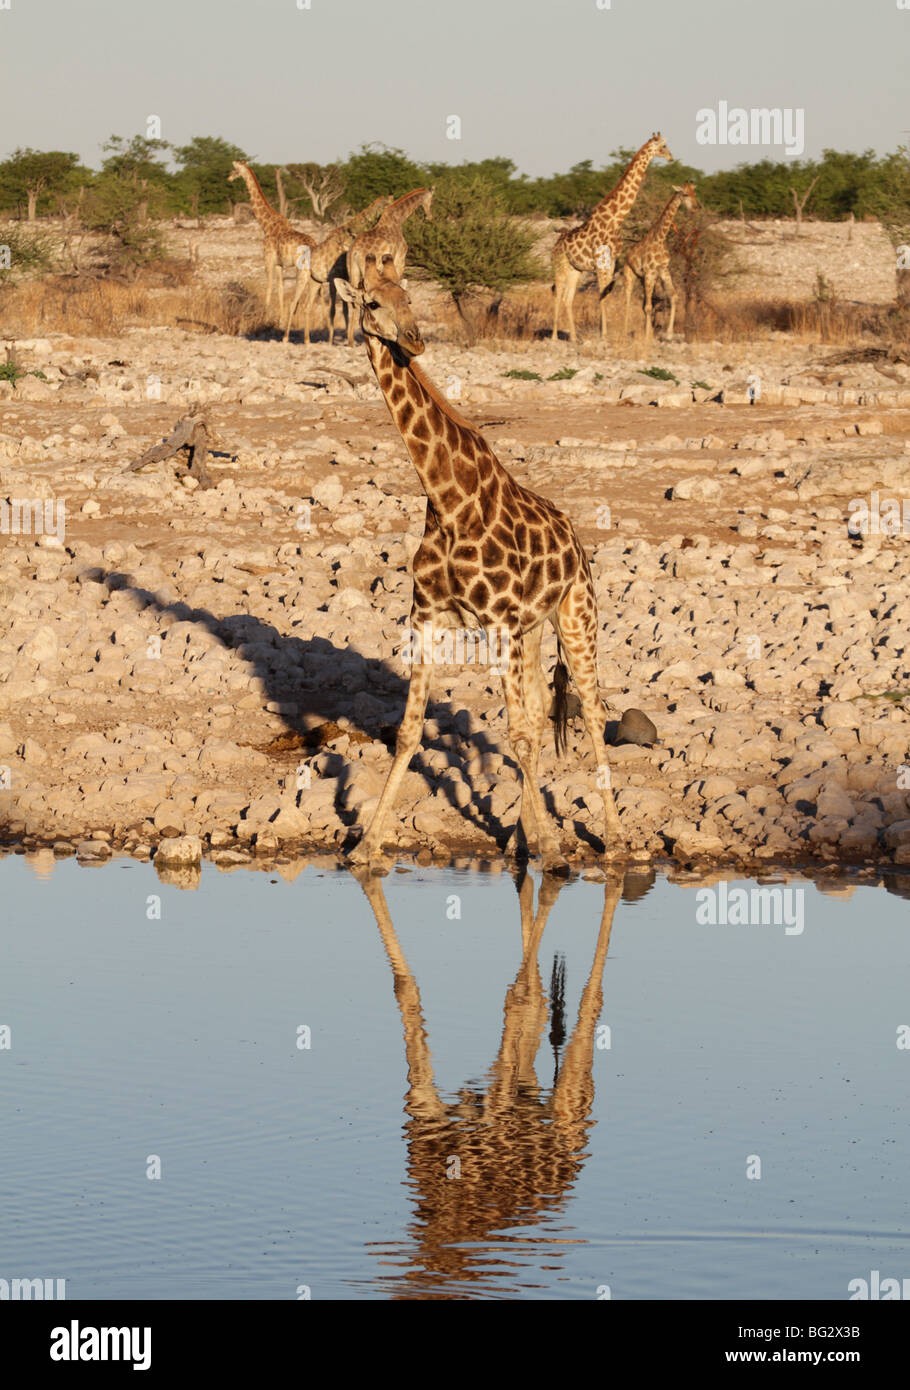 Girafe adulte seul au point d'eau Banque D'Images